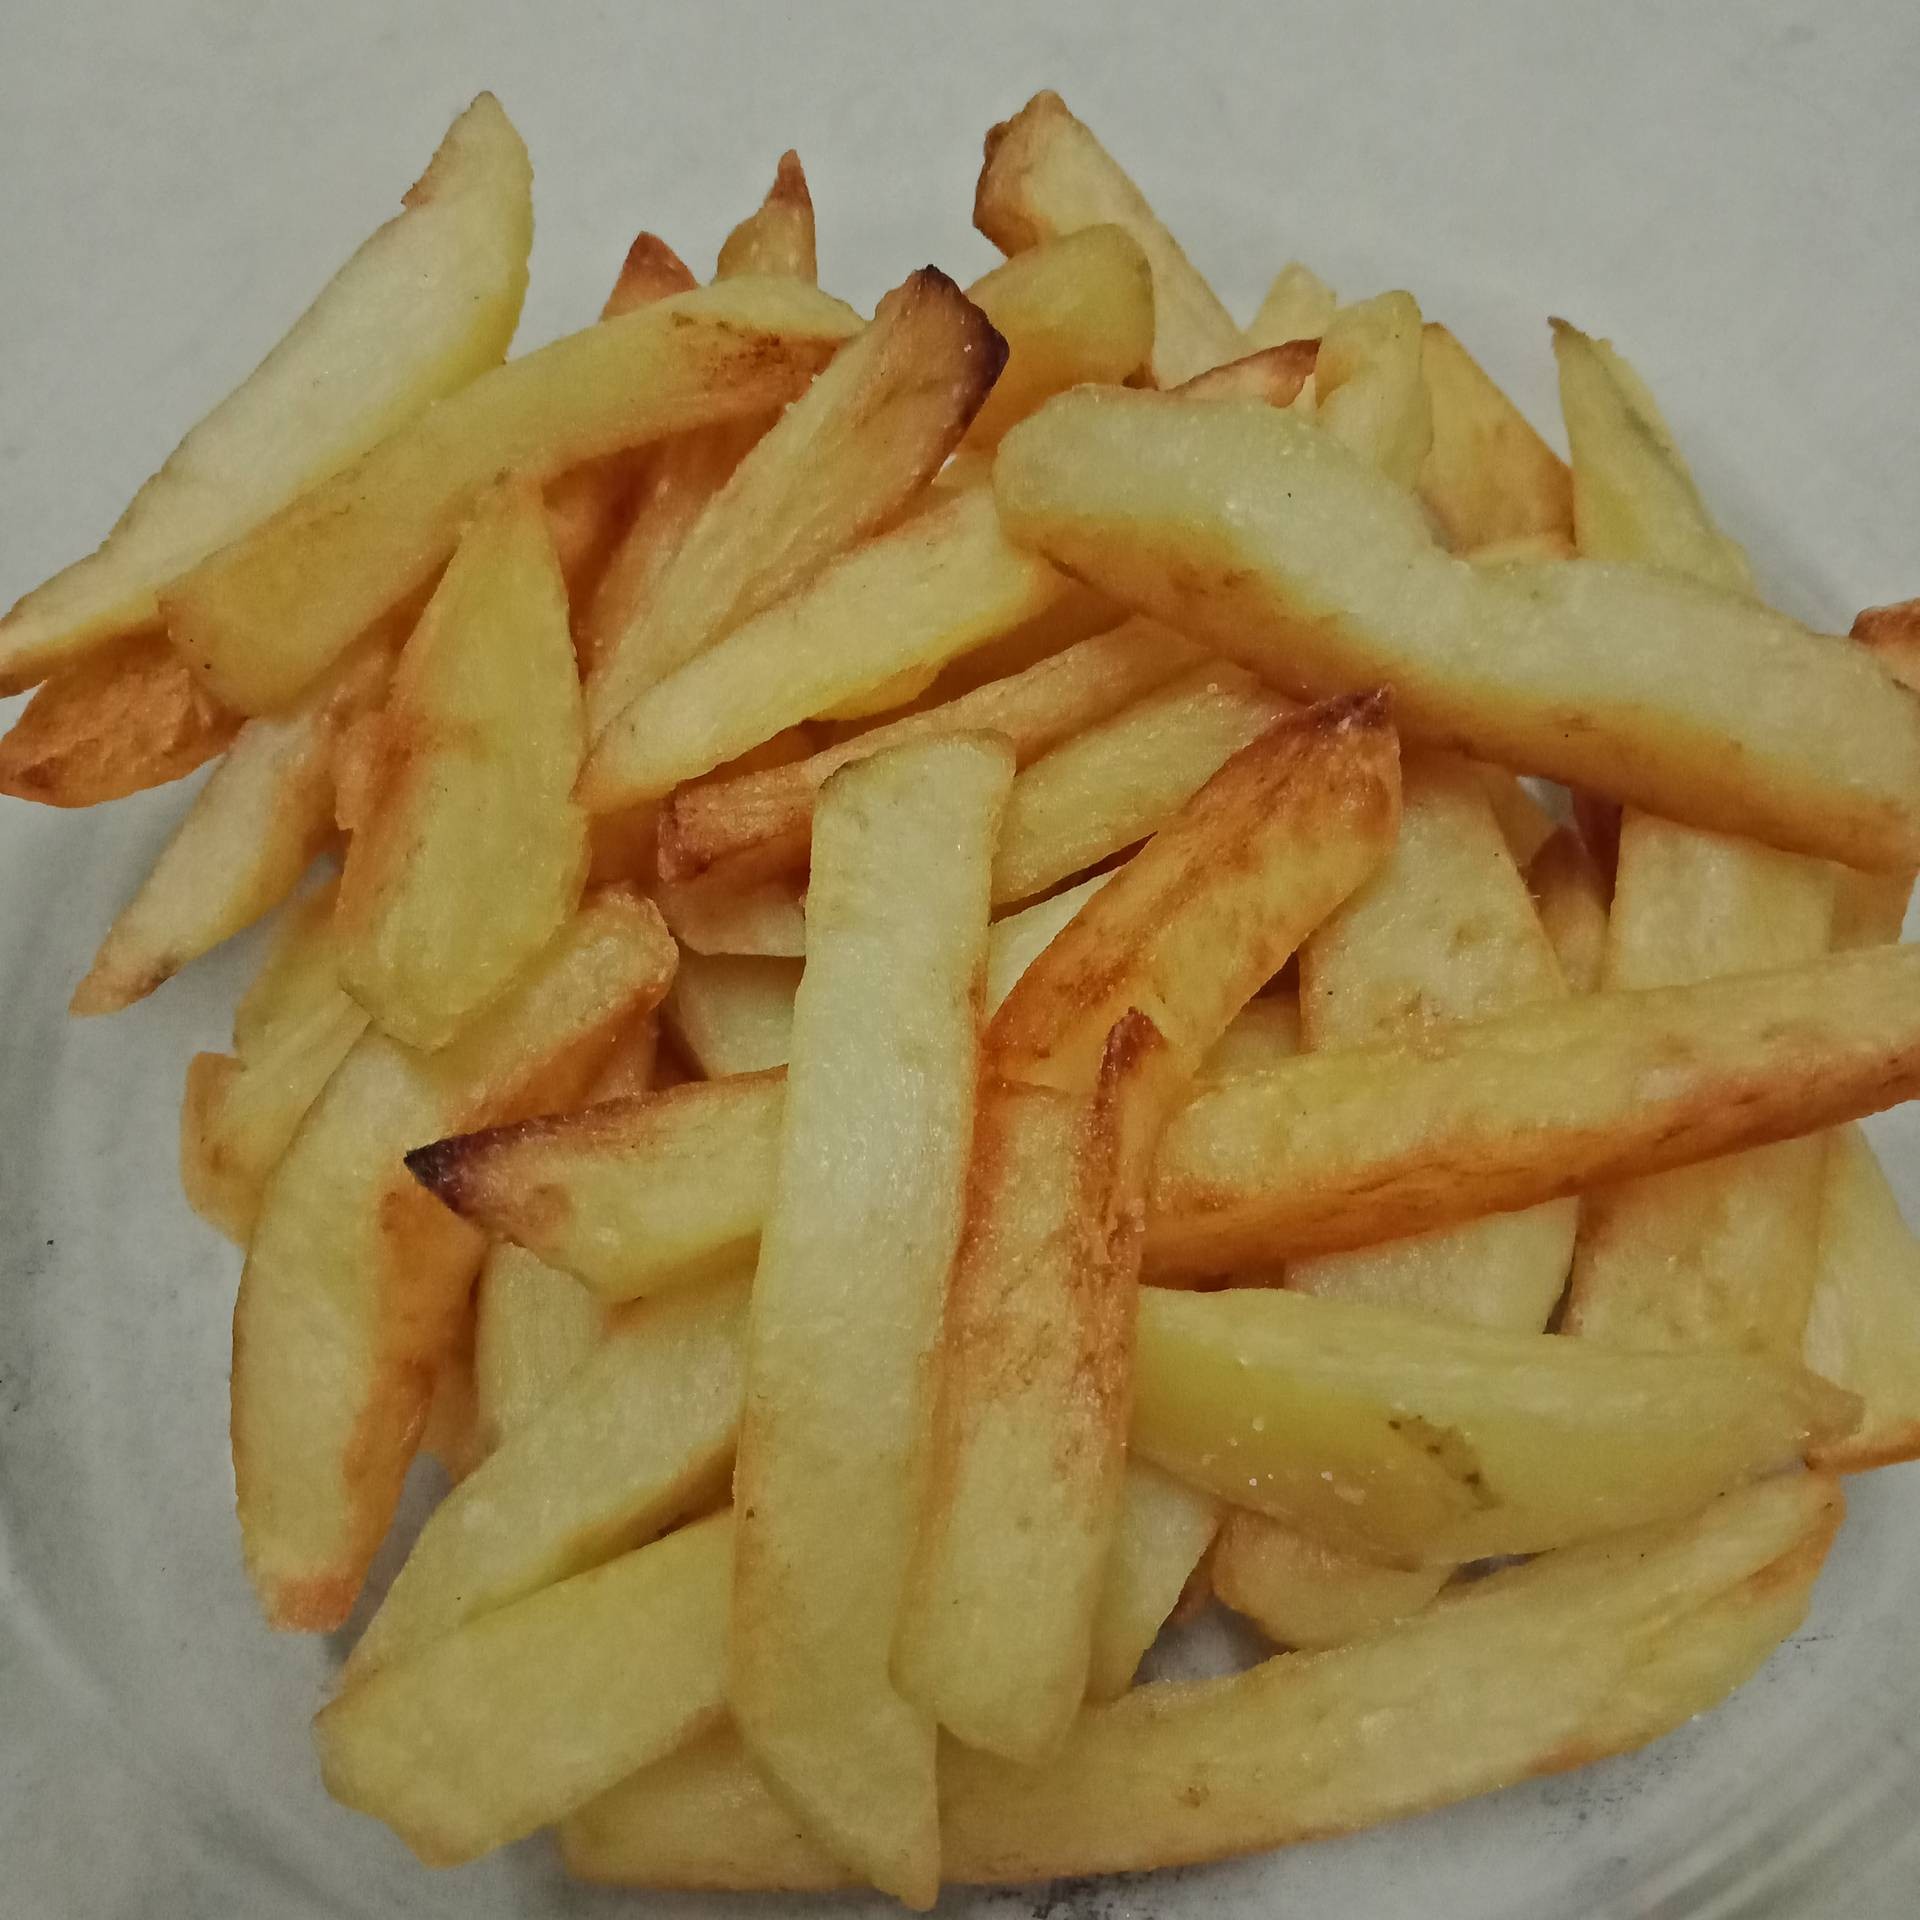 French fries สูตรกรอบ หอมมันฝรั่งแท้ๆ